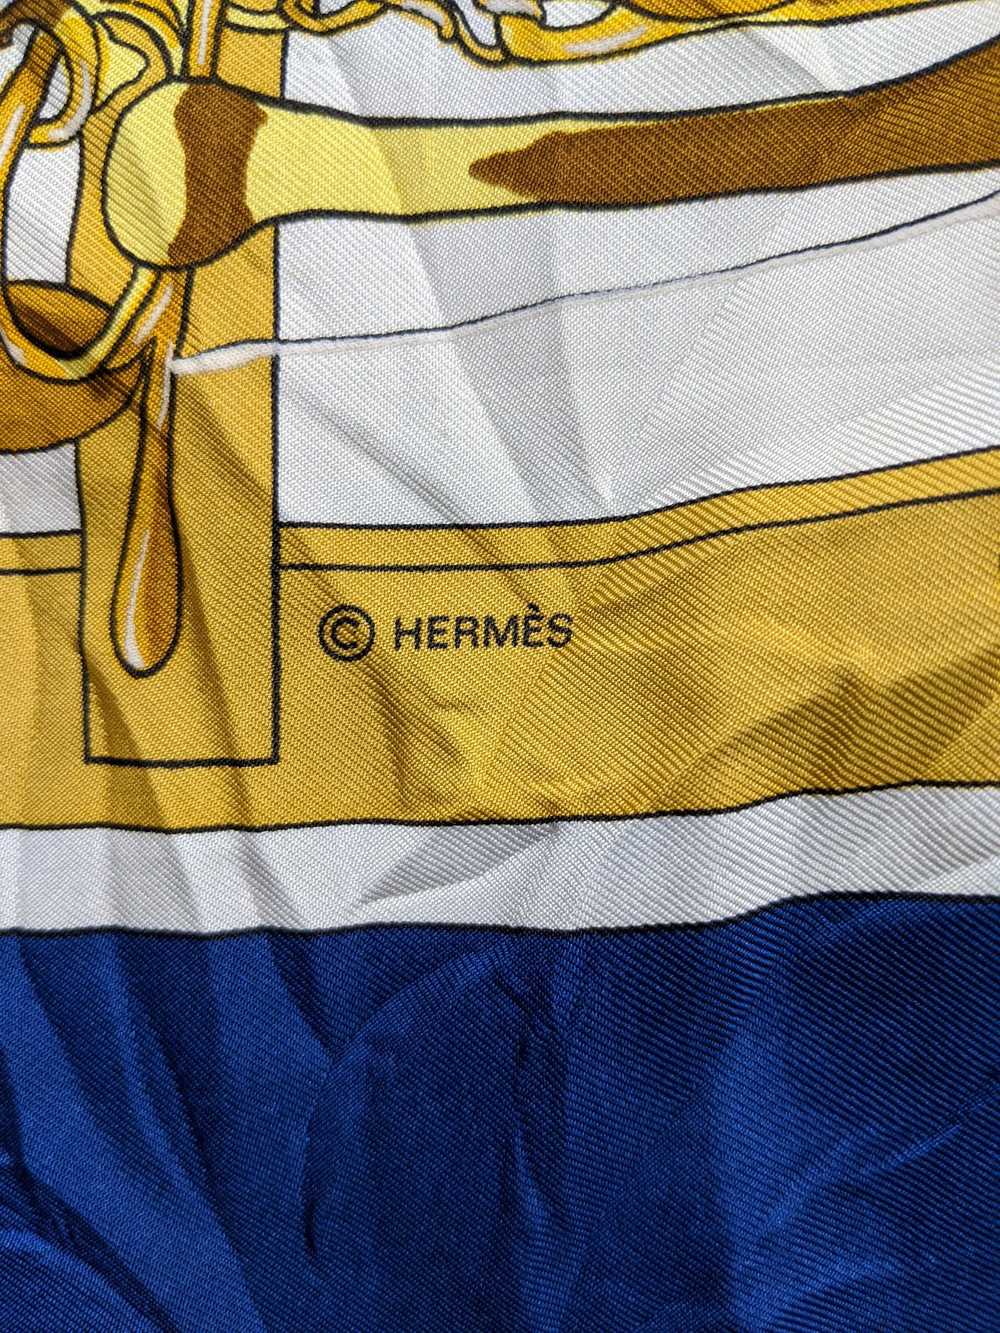 Vintage Hermes Mors & Fillets Silk Scarf - image 5